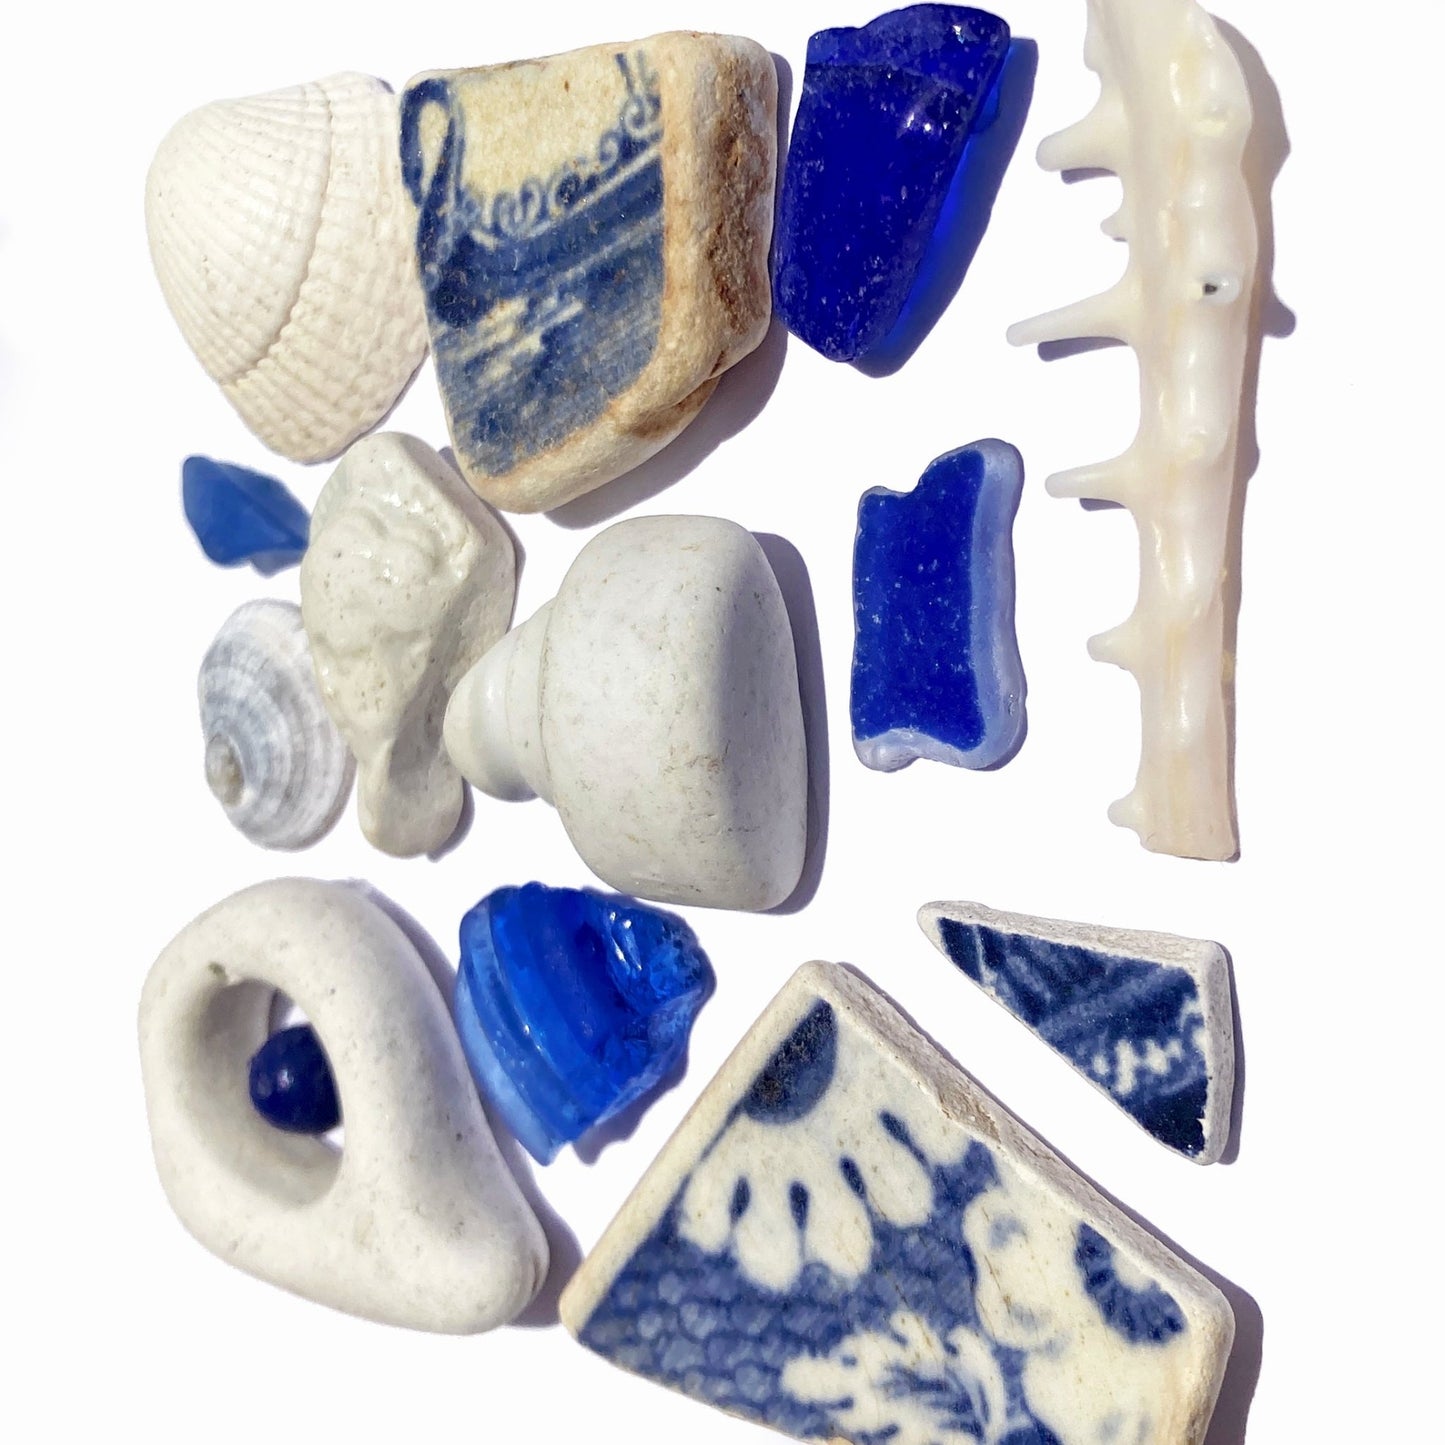 Framed Beachcombing Curiosties - Mosaic Wall Art - Beautiful Blues - Sea Glass, Victorian Pottery, Sculpture, Shells - East Neuk Beach Crafts